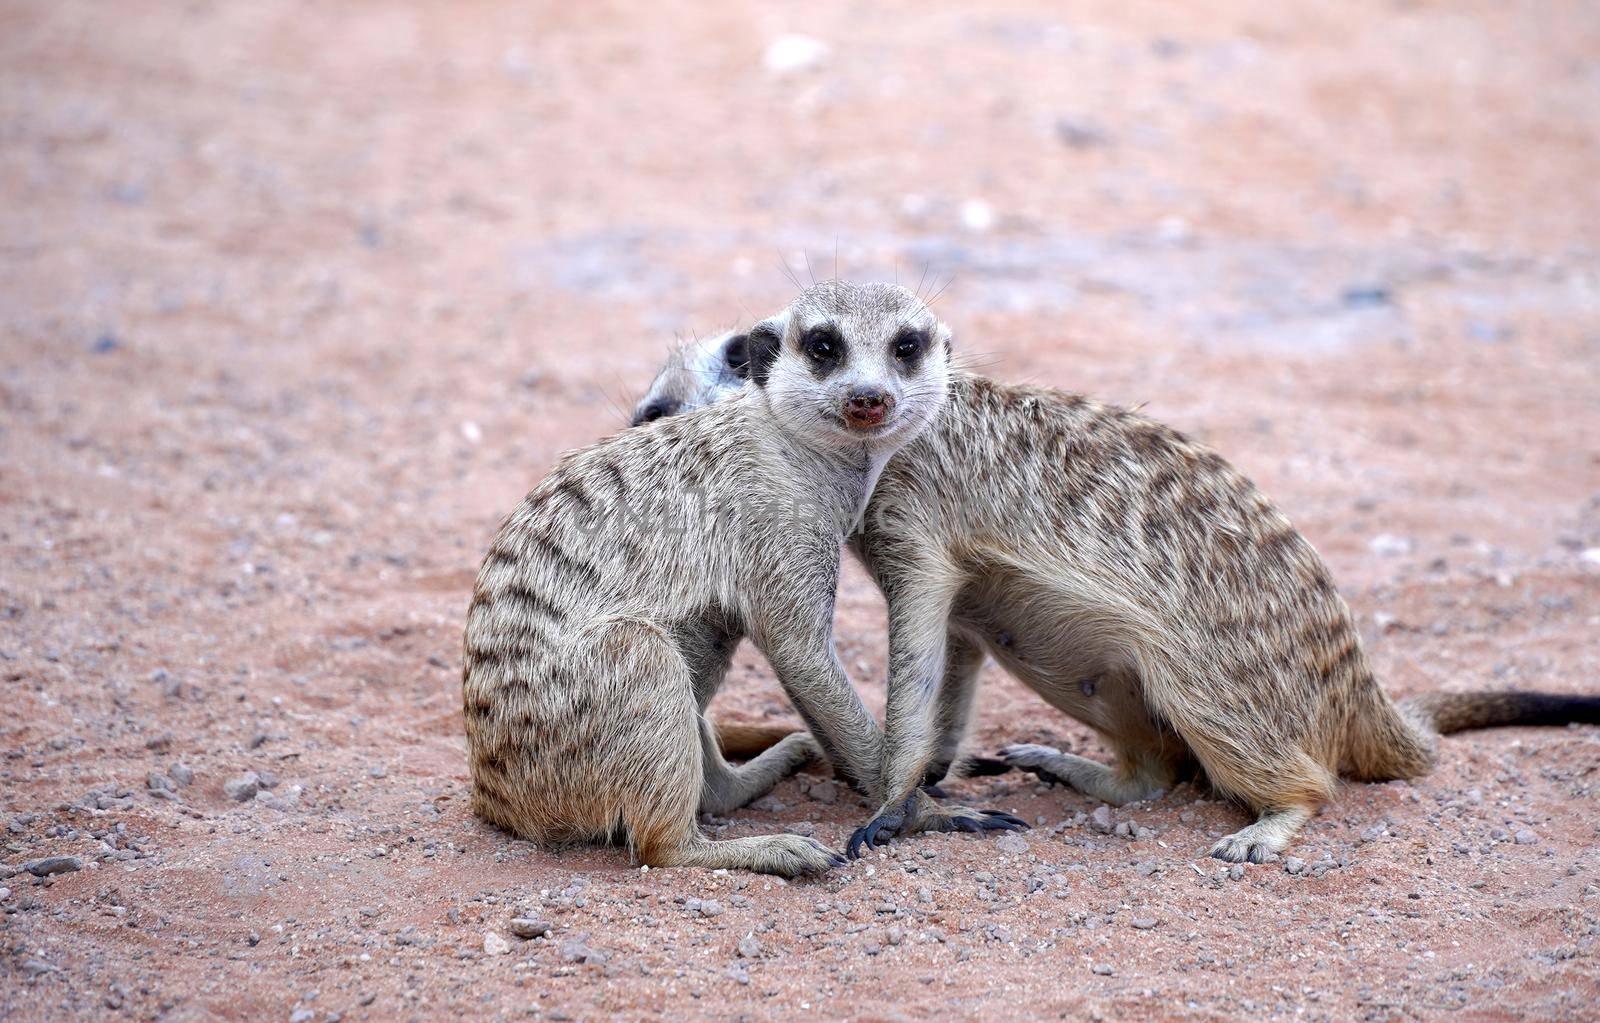 Cute Meerkat in South African park in Kalahari desert